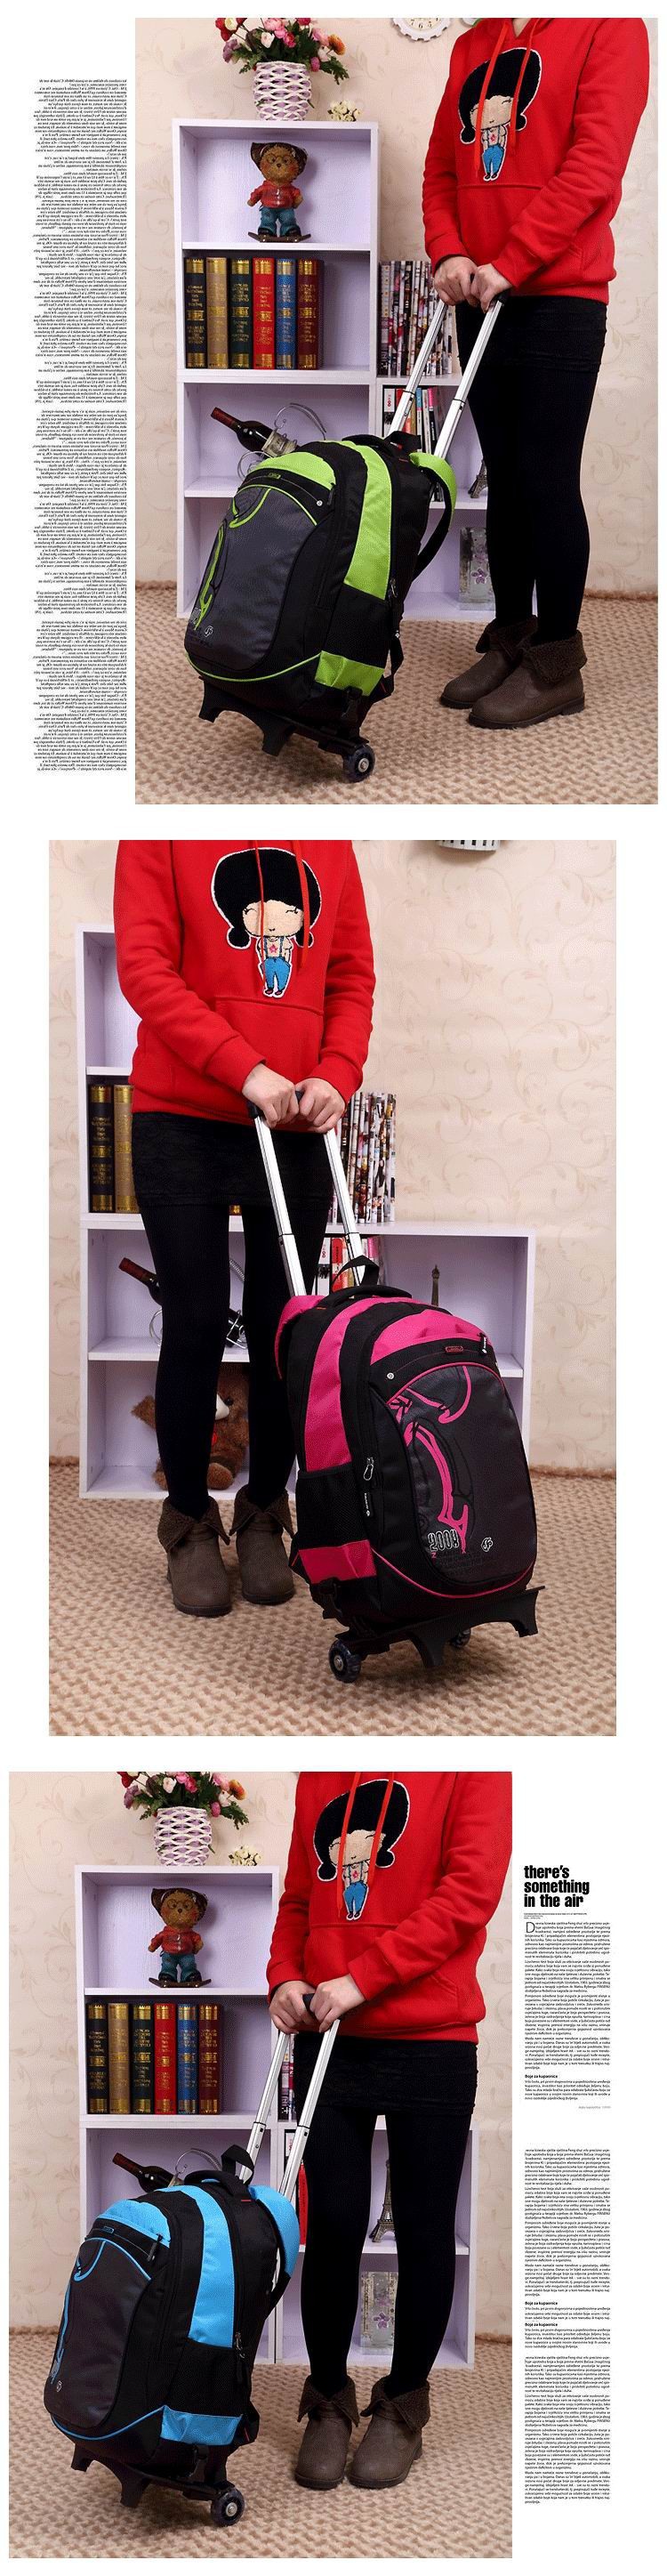 school-trolley-backpack-bag-wheels-backpack-luggage-travel-9